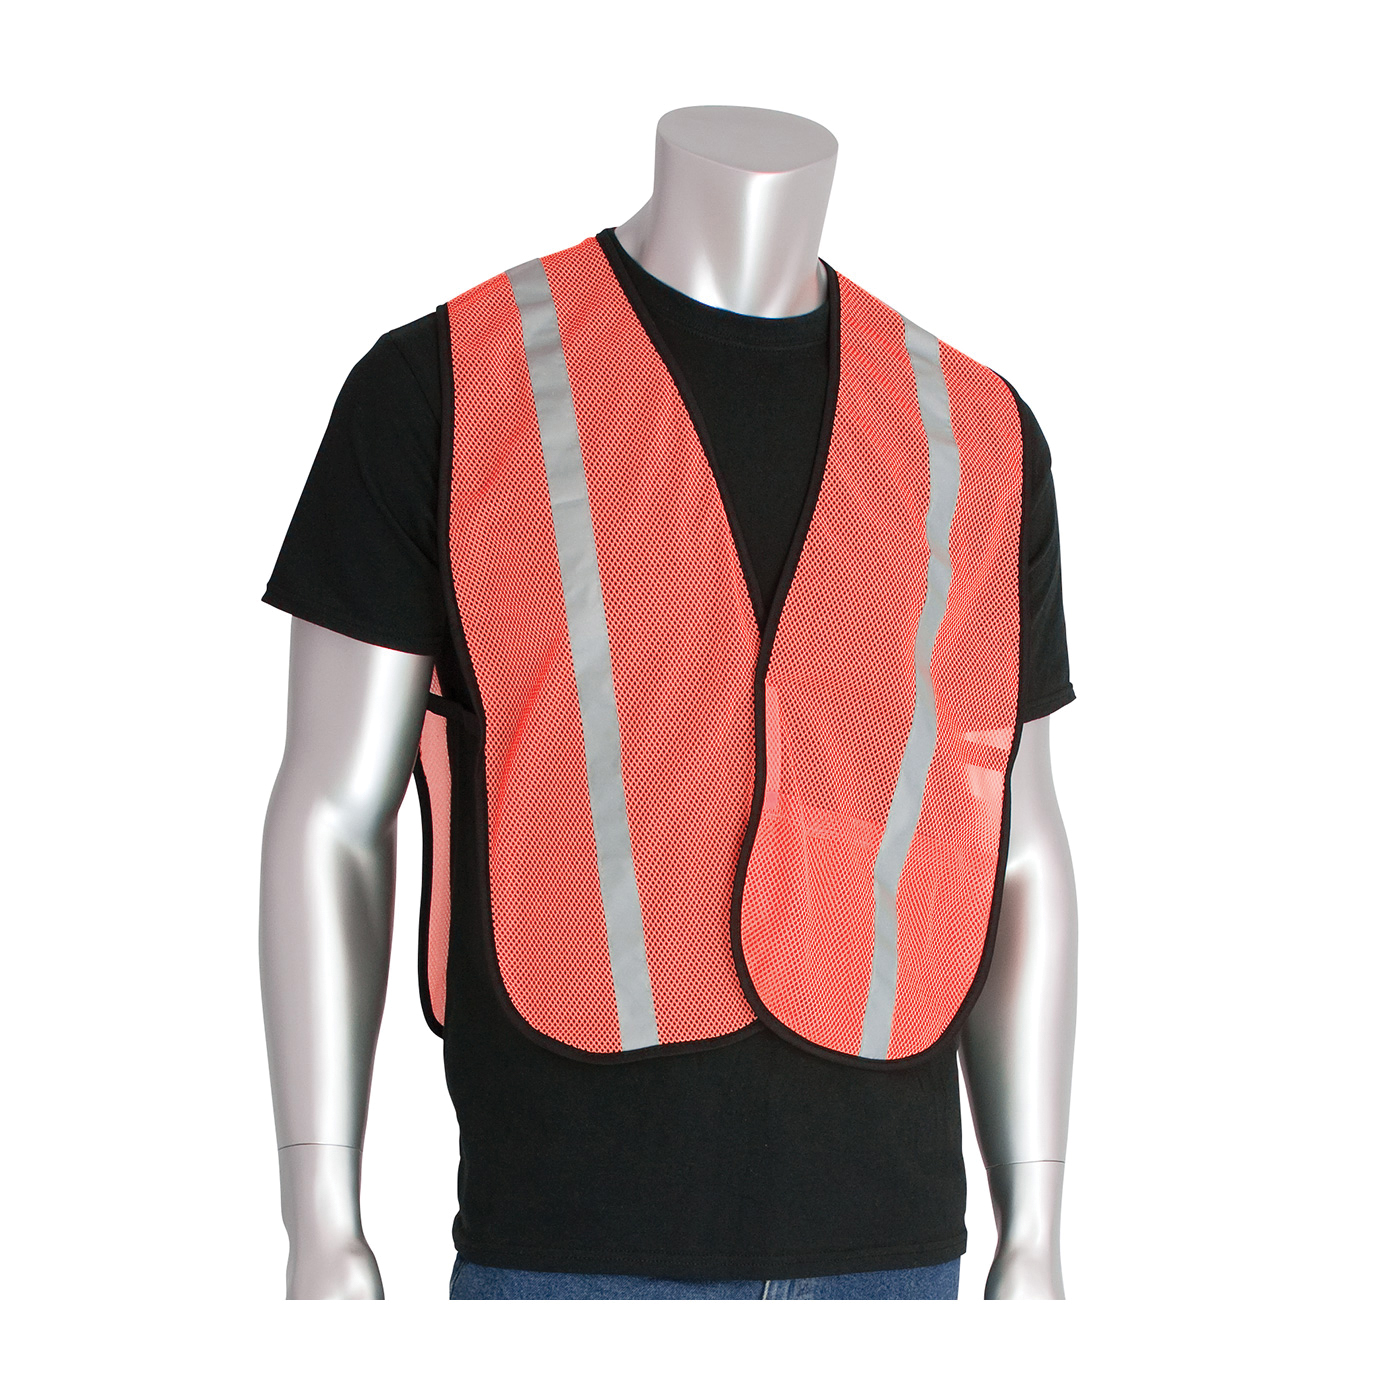 PIP® 300-EVOR-EOR Non-ANSI Safety Vest, Universal, Hi-Viz Orange, Polyester Mesh, Hook and Loop Closure, 1 Pockets